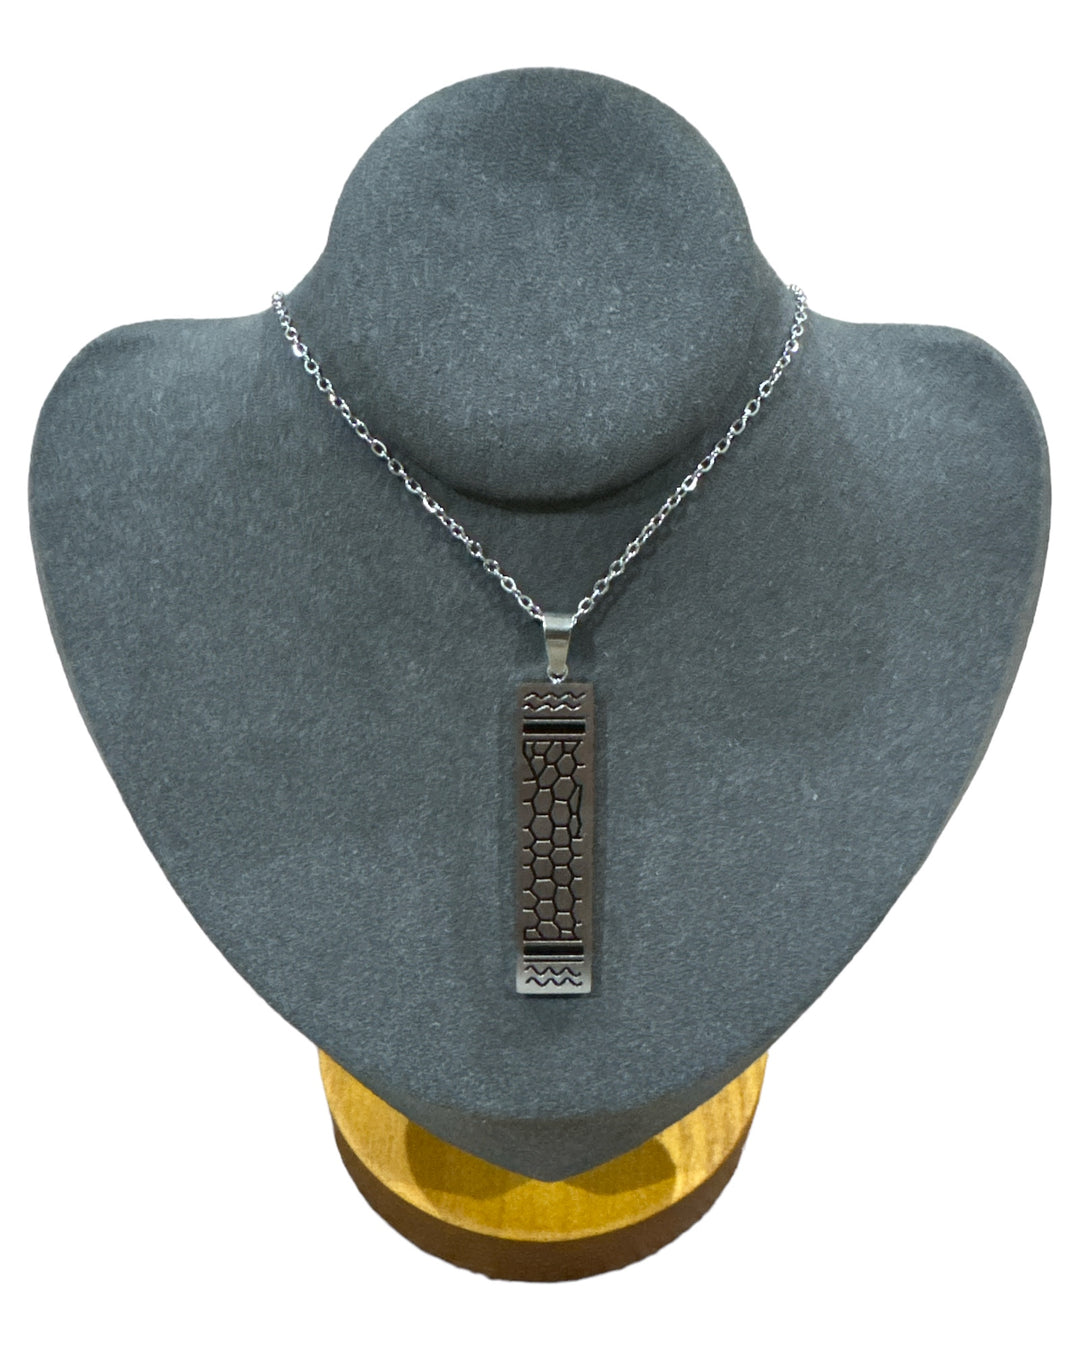 Élégance moderne : collier rectangulaire en acier inoxydable avec imprimé keffieh noir et argenté 